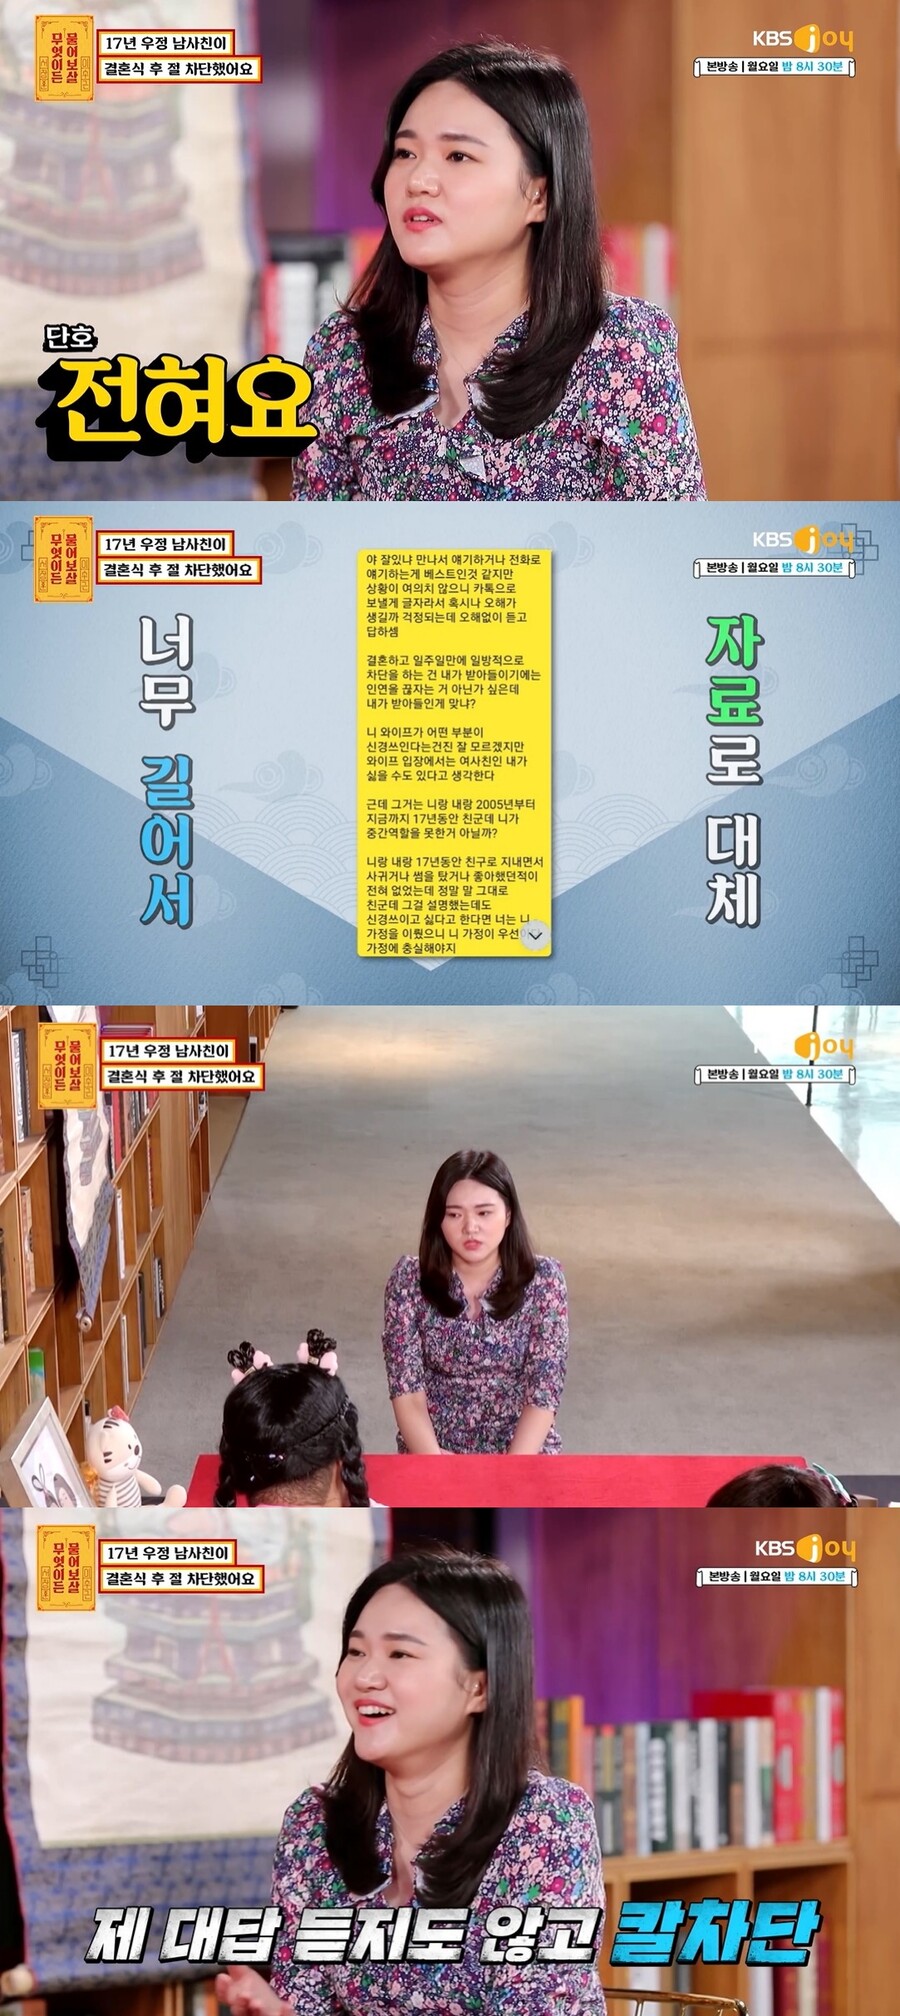 ▲ KBS Joy 예능 프로그램 '무엇이든 물어보살' 방송 화면. 출처| KBS Joy